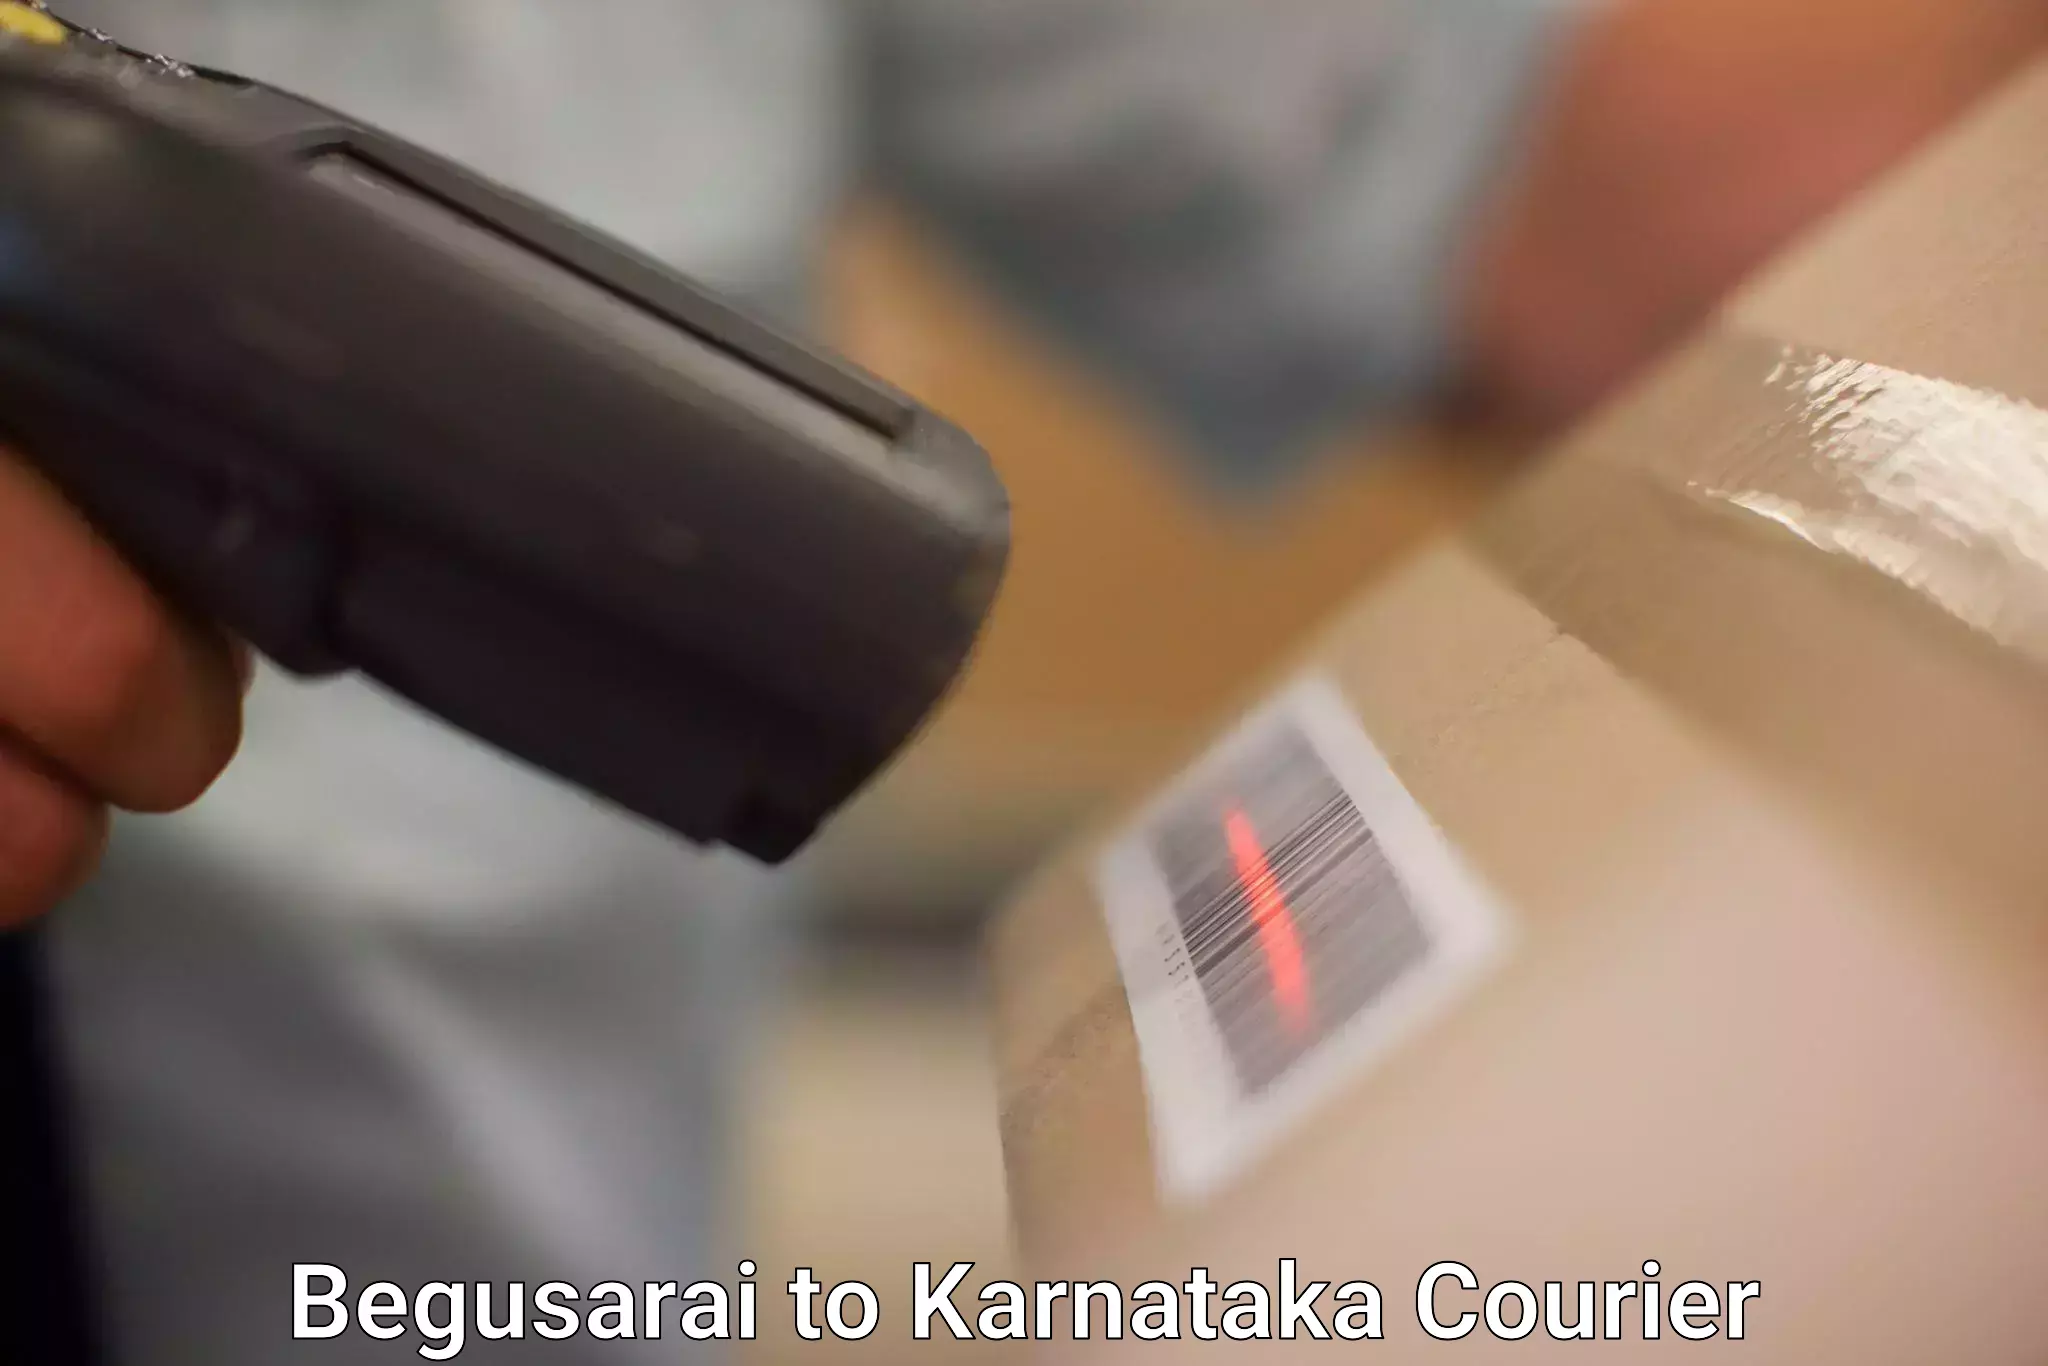 User-friendly courier app Begusarai to Saraswathipuram